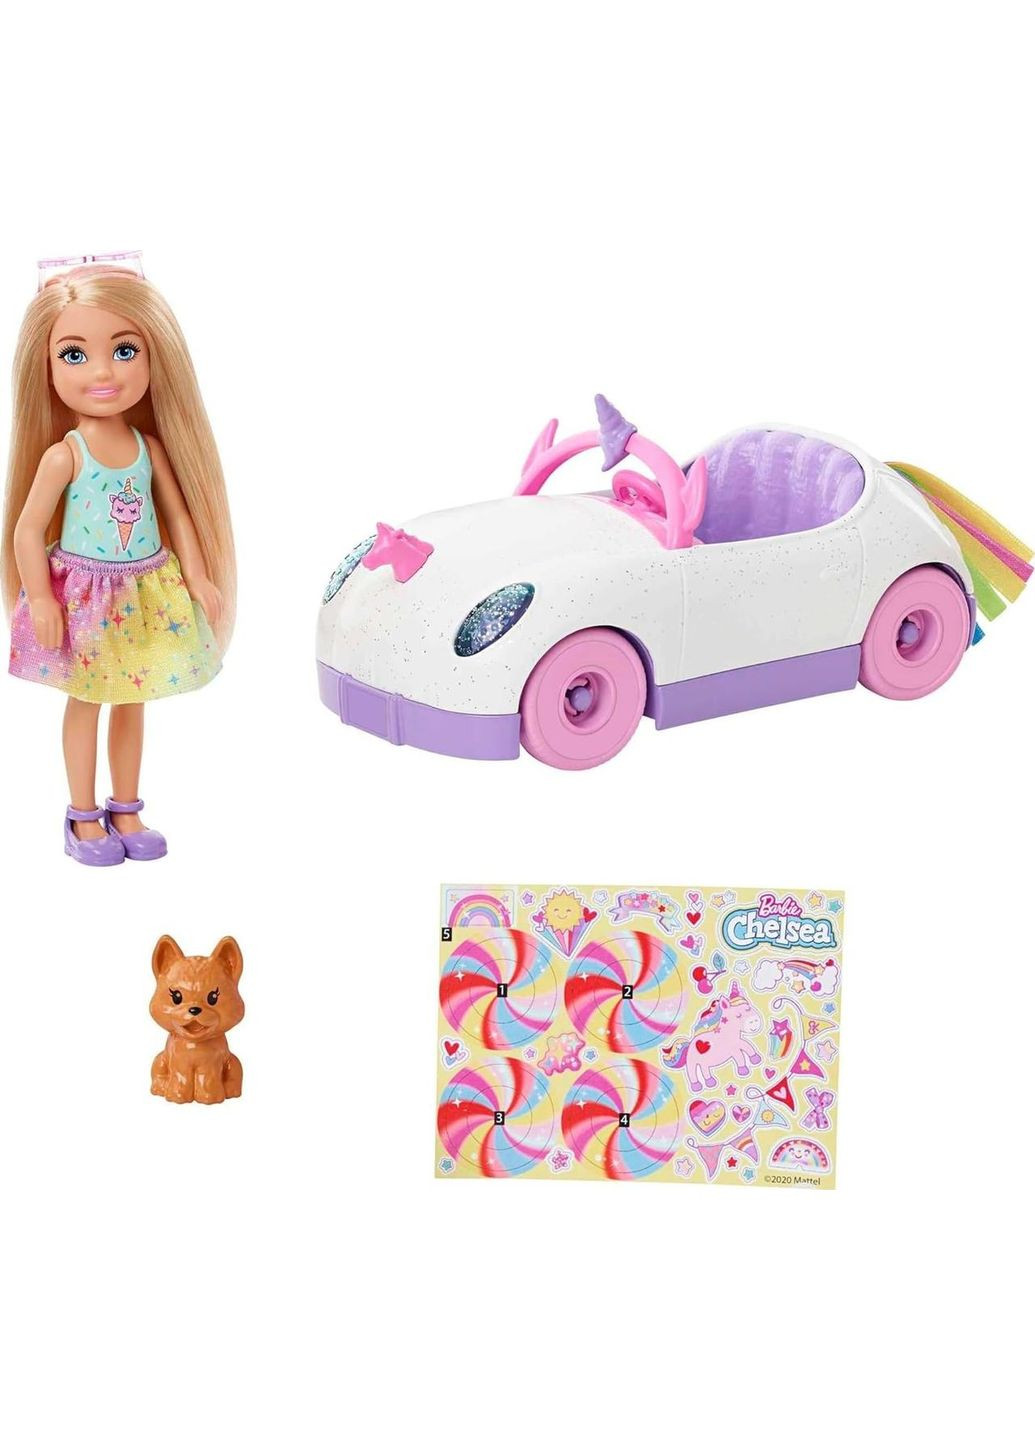 Кукла Барби на автомобиле в стиле Единорога Barbie Club Chelsea Doll with OpenTop Rainbow Unicorn-Themed Car Mattel (282964494)